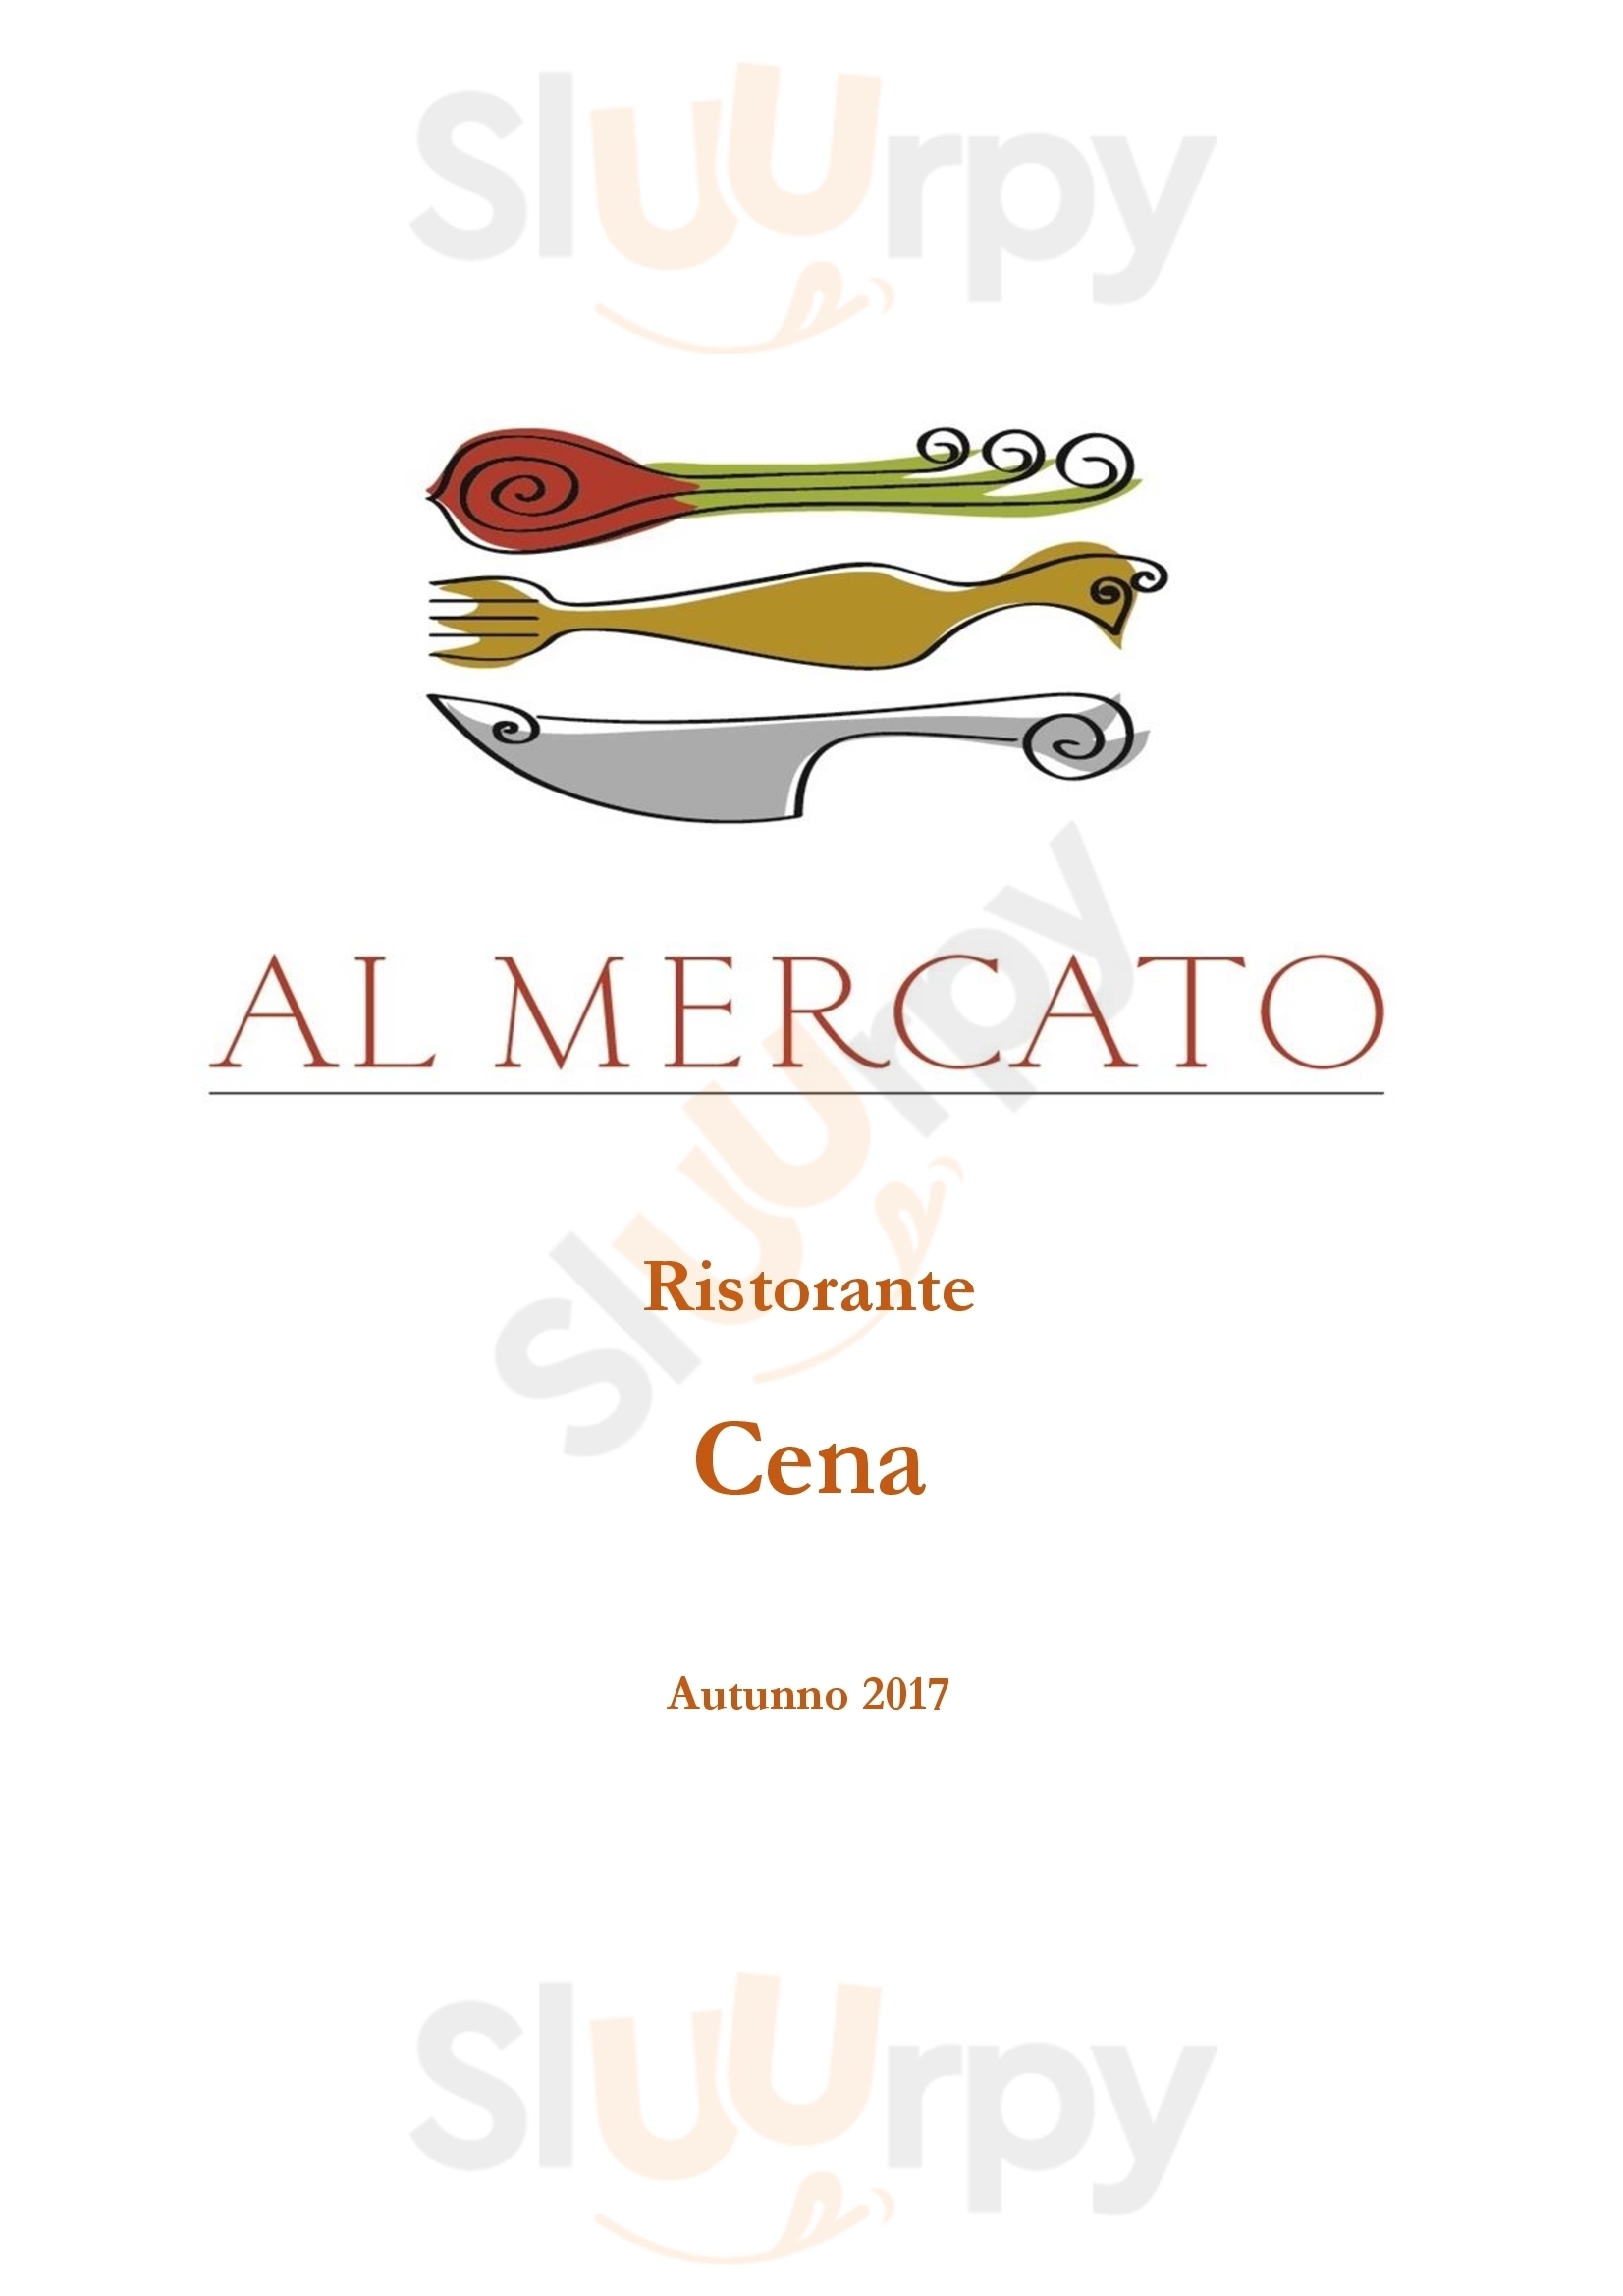 Al Mercato  Milano menù 1 pagina